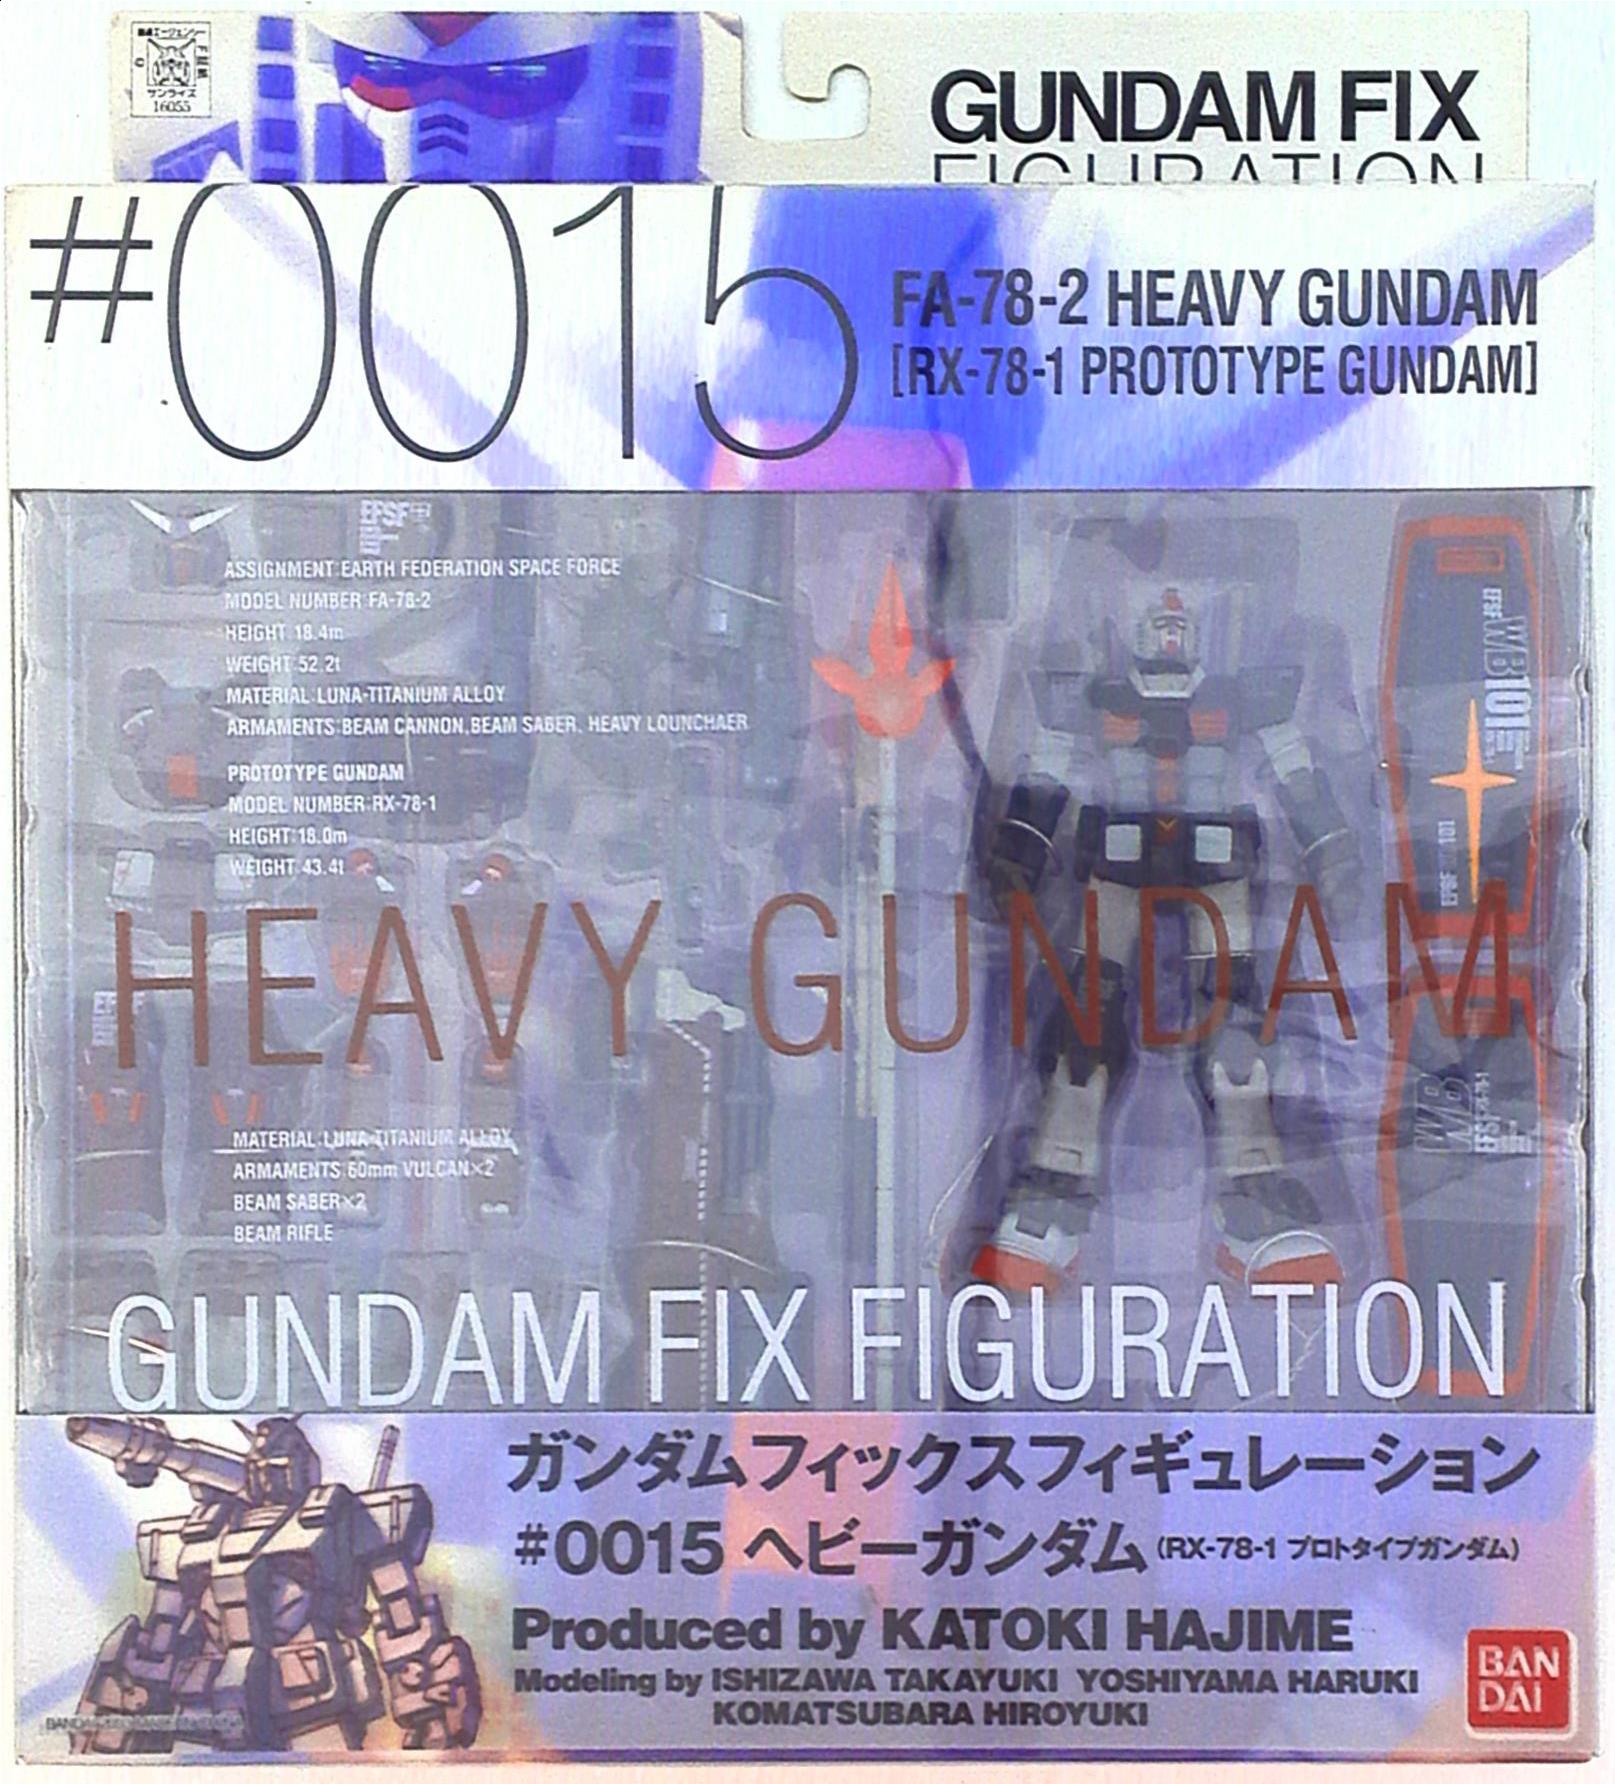 0015 ヘビーガンダム gff ガンダムフィックスフィギュレーション機動 